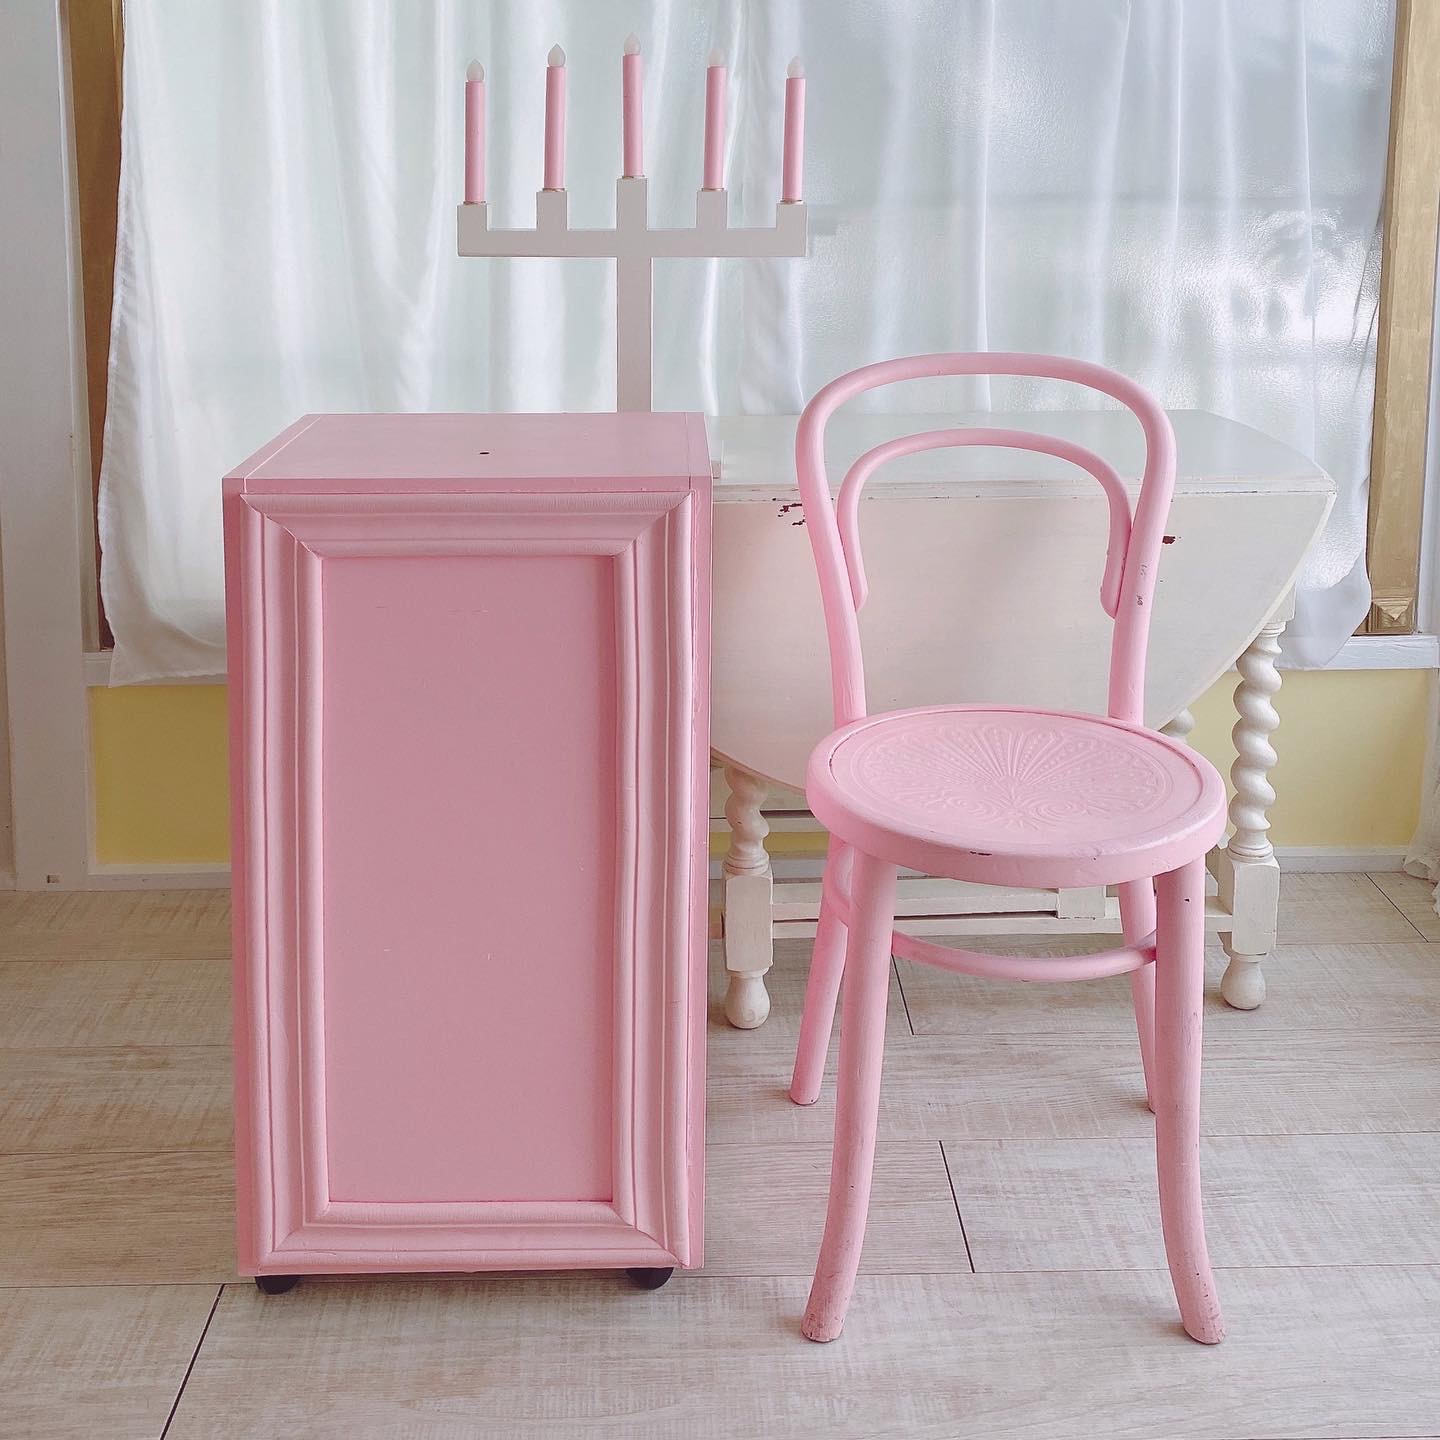 ピンクの棚、ピンクのチェア、キャンドル型のライト。